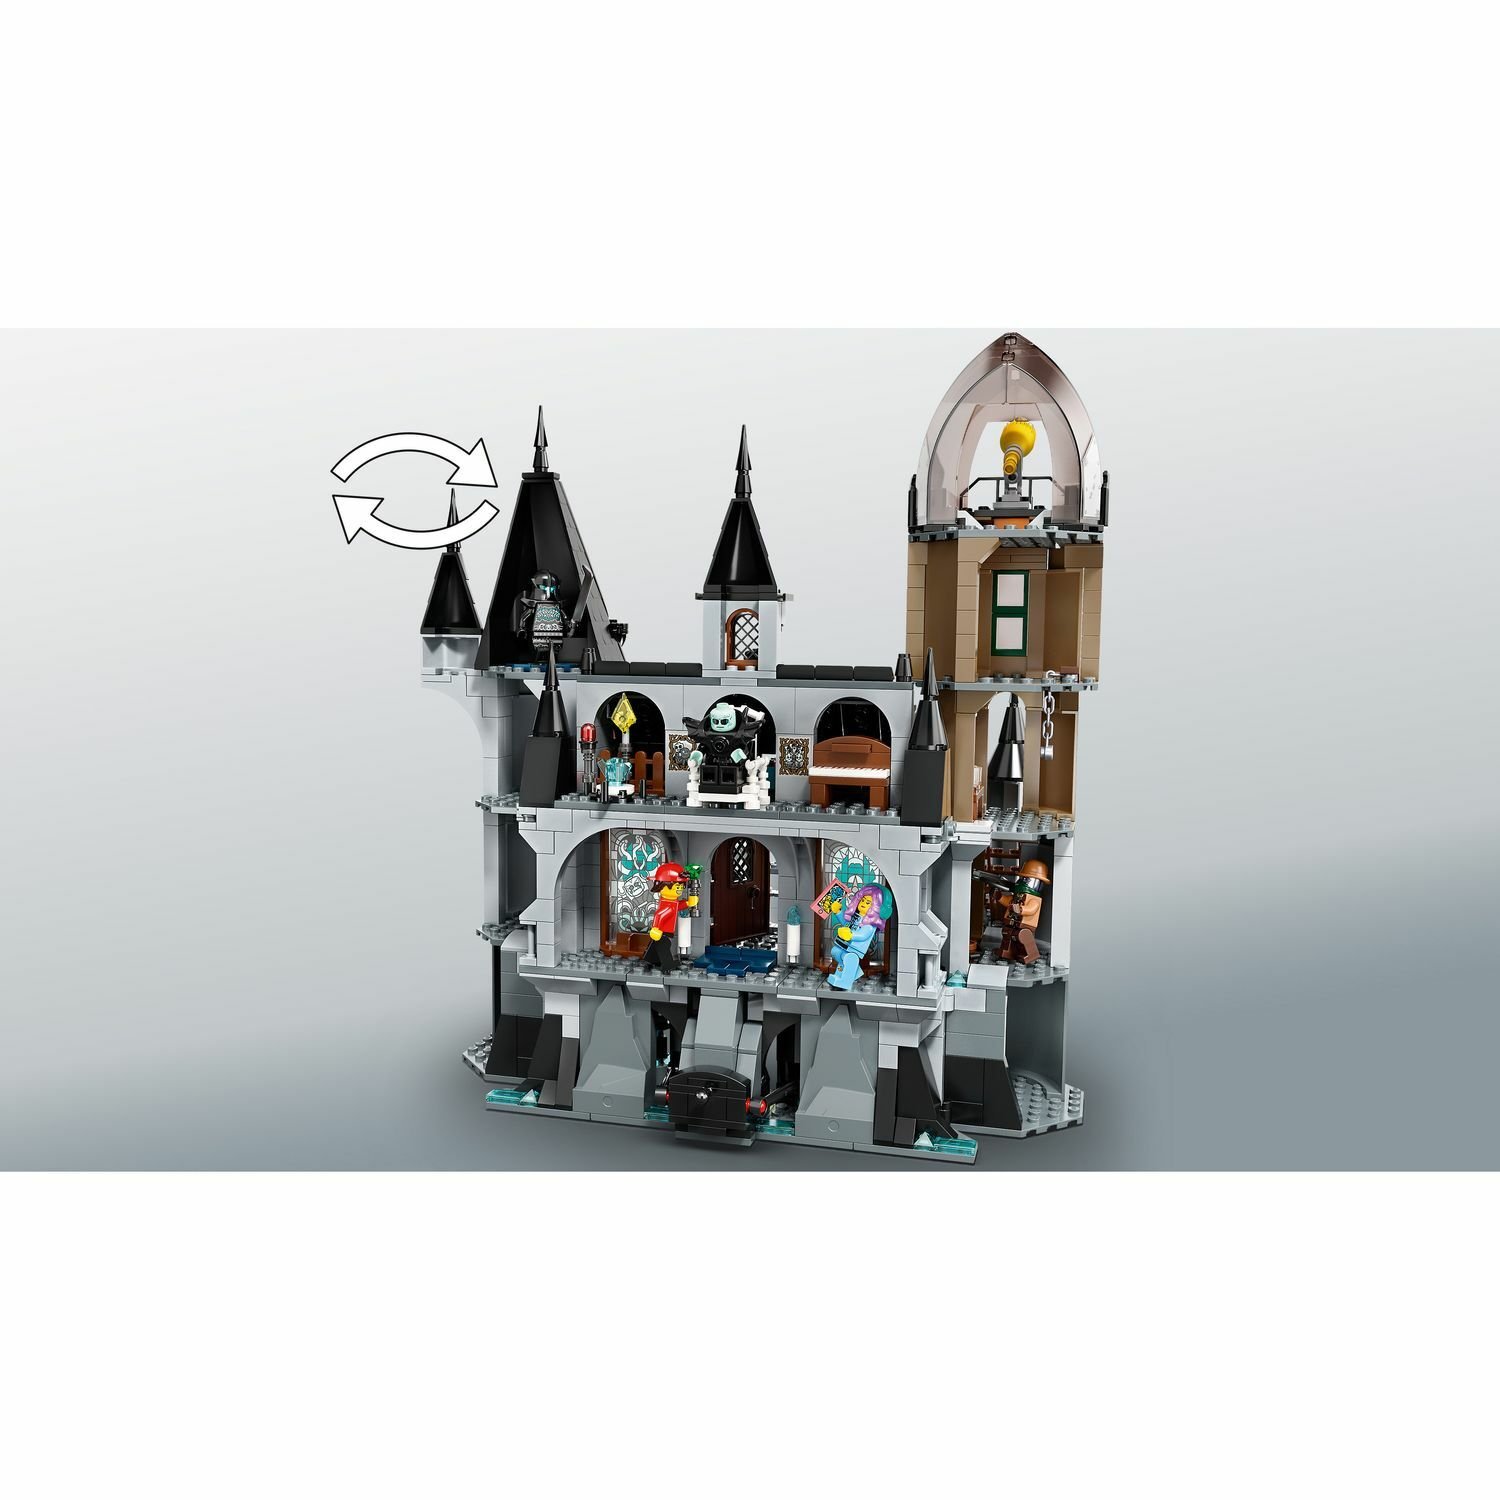 Lego Hidden Sidу 70437 Заколдованный замок